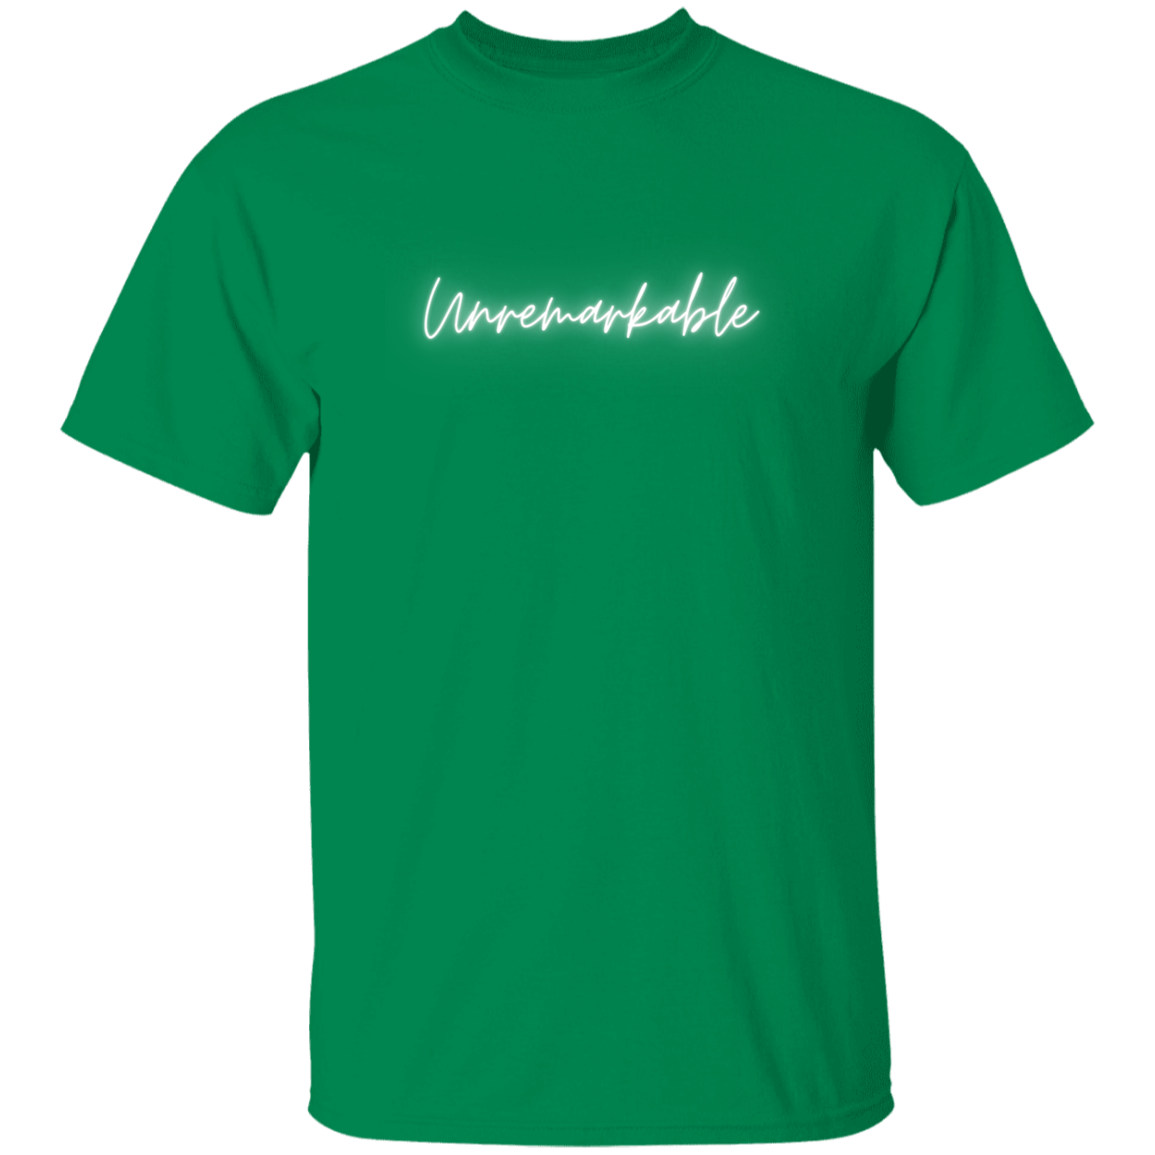 Unremarkable 5.3 oz. T-Shirt